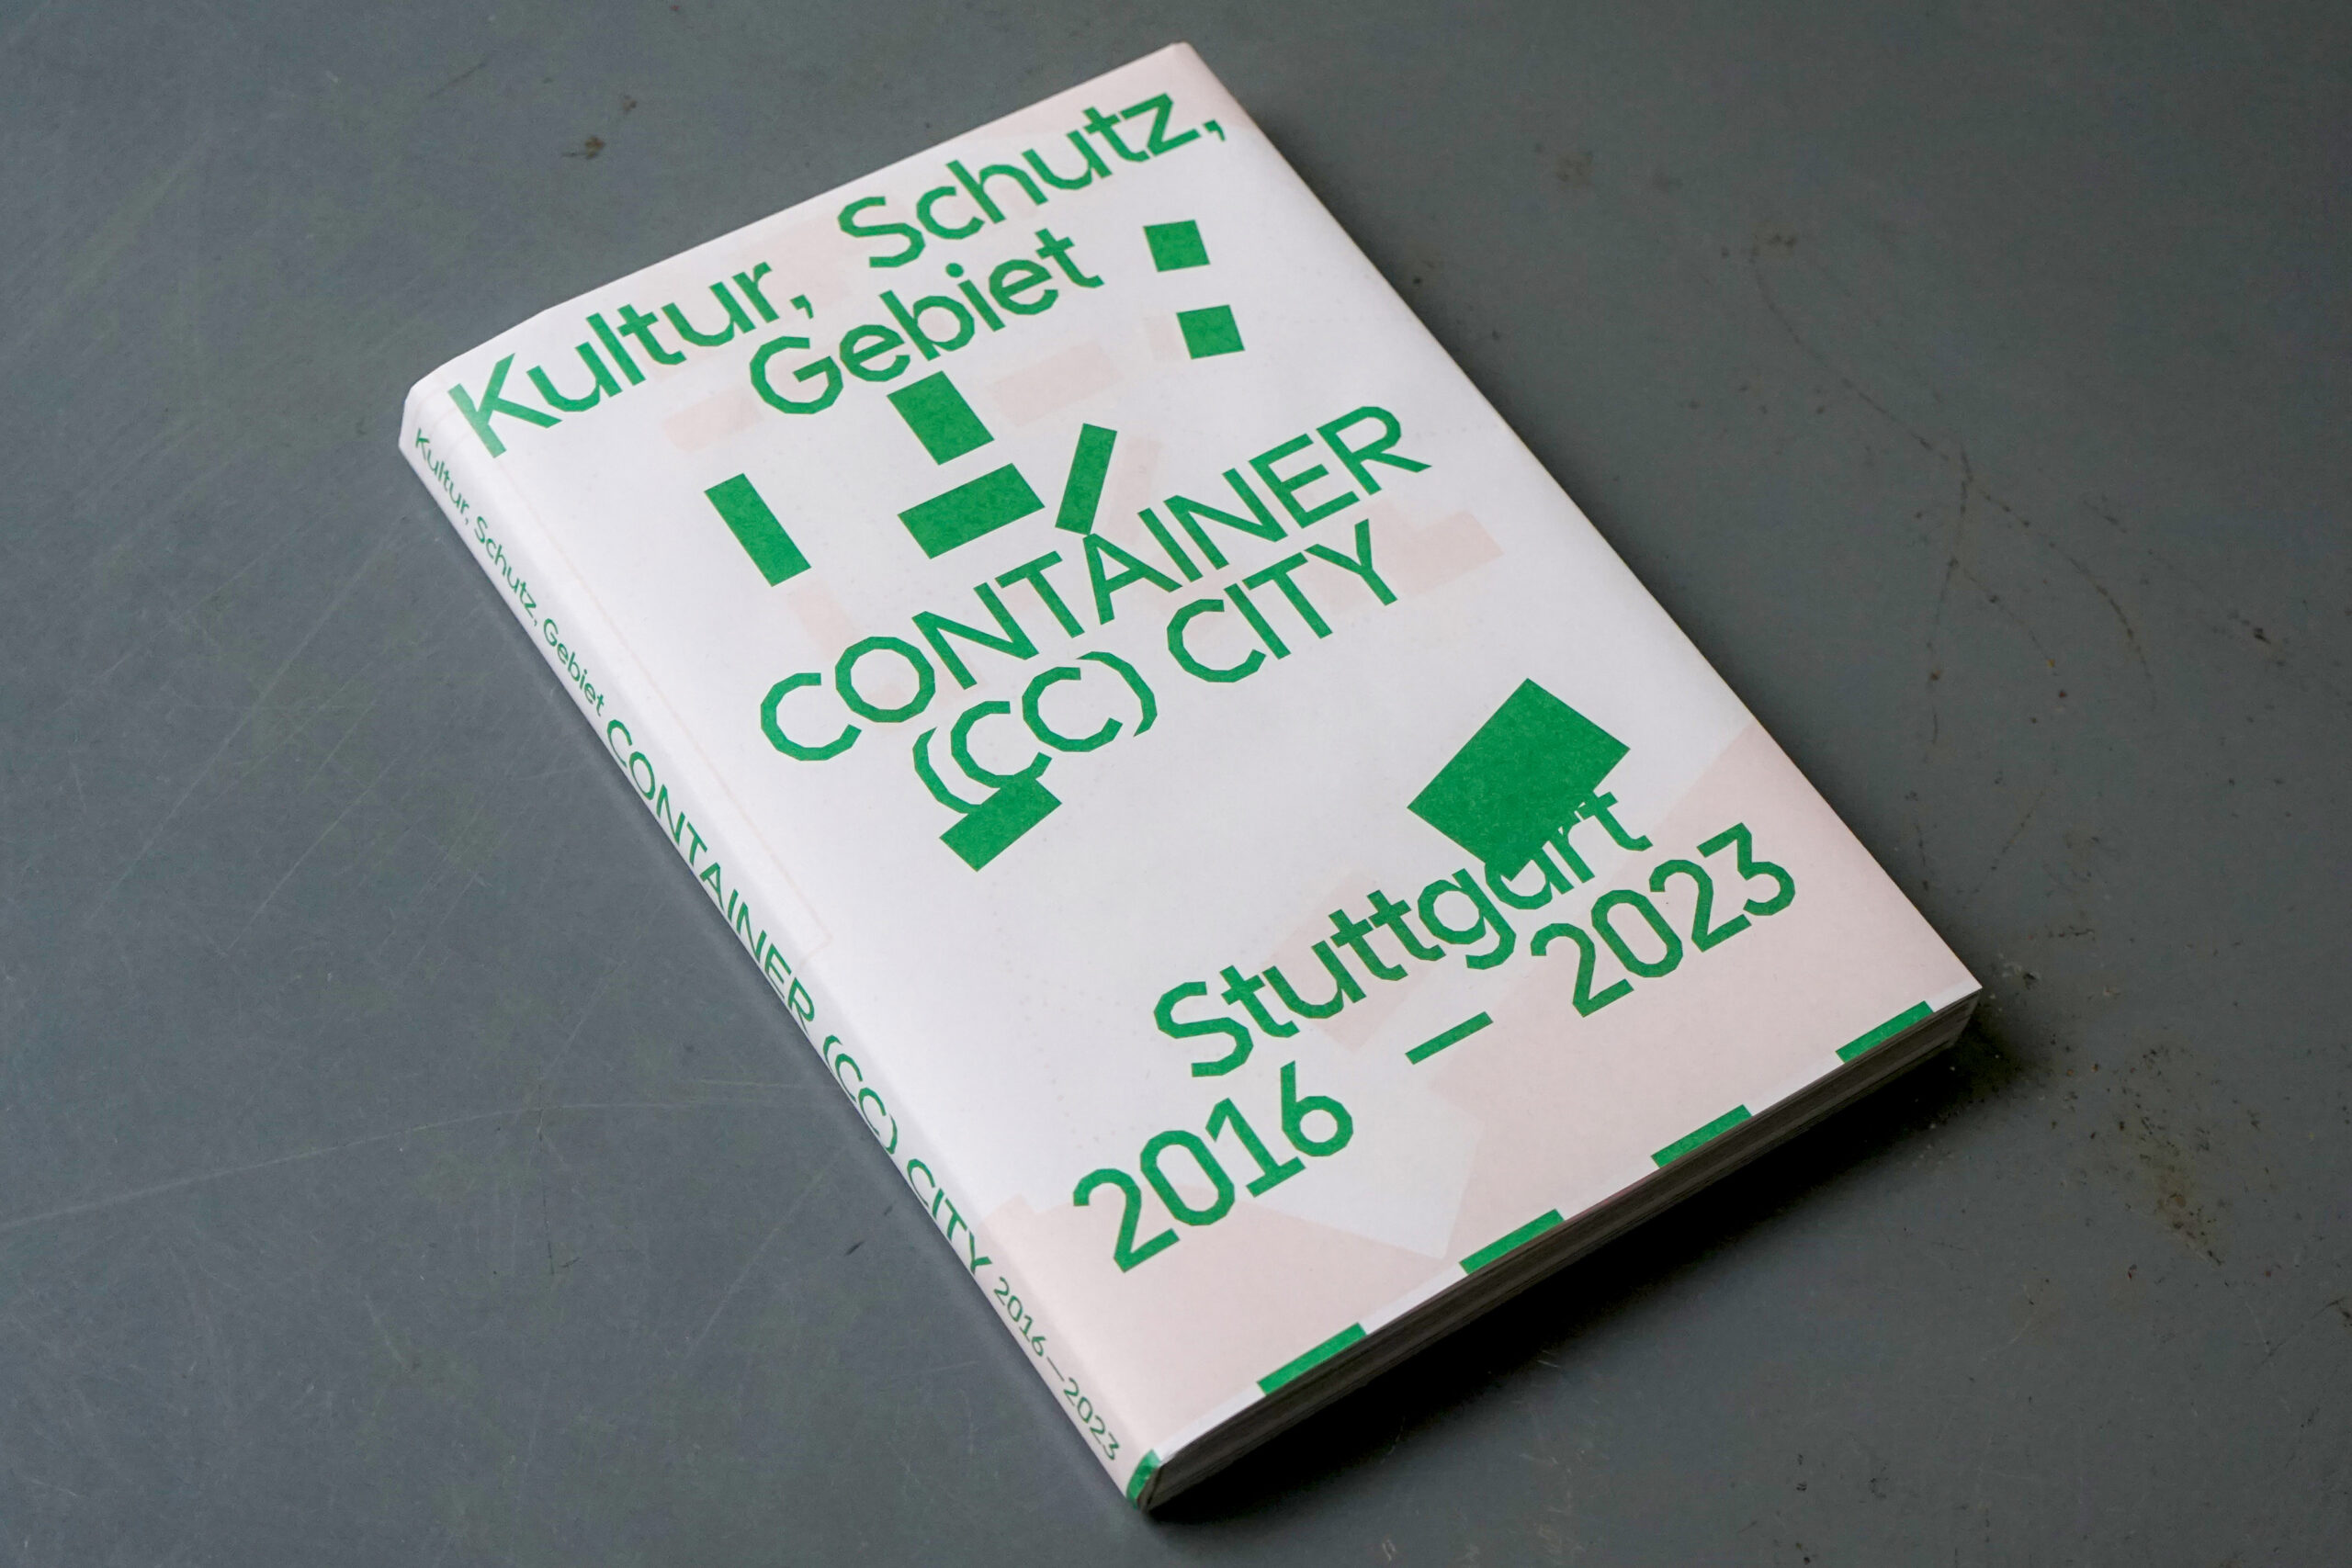 Kultur, Schutz, Gebiet - Container City. 2016-2023